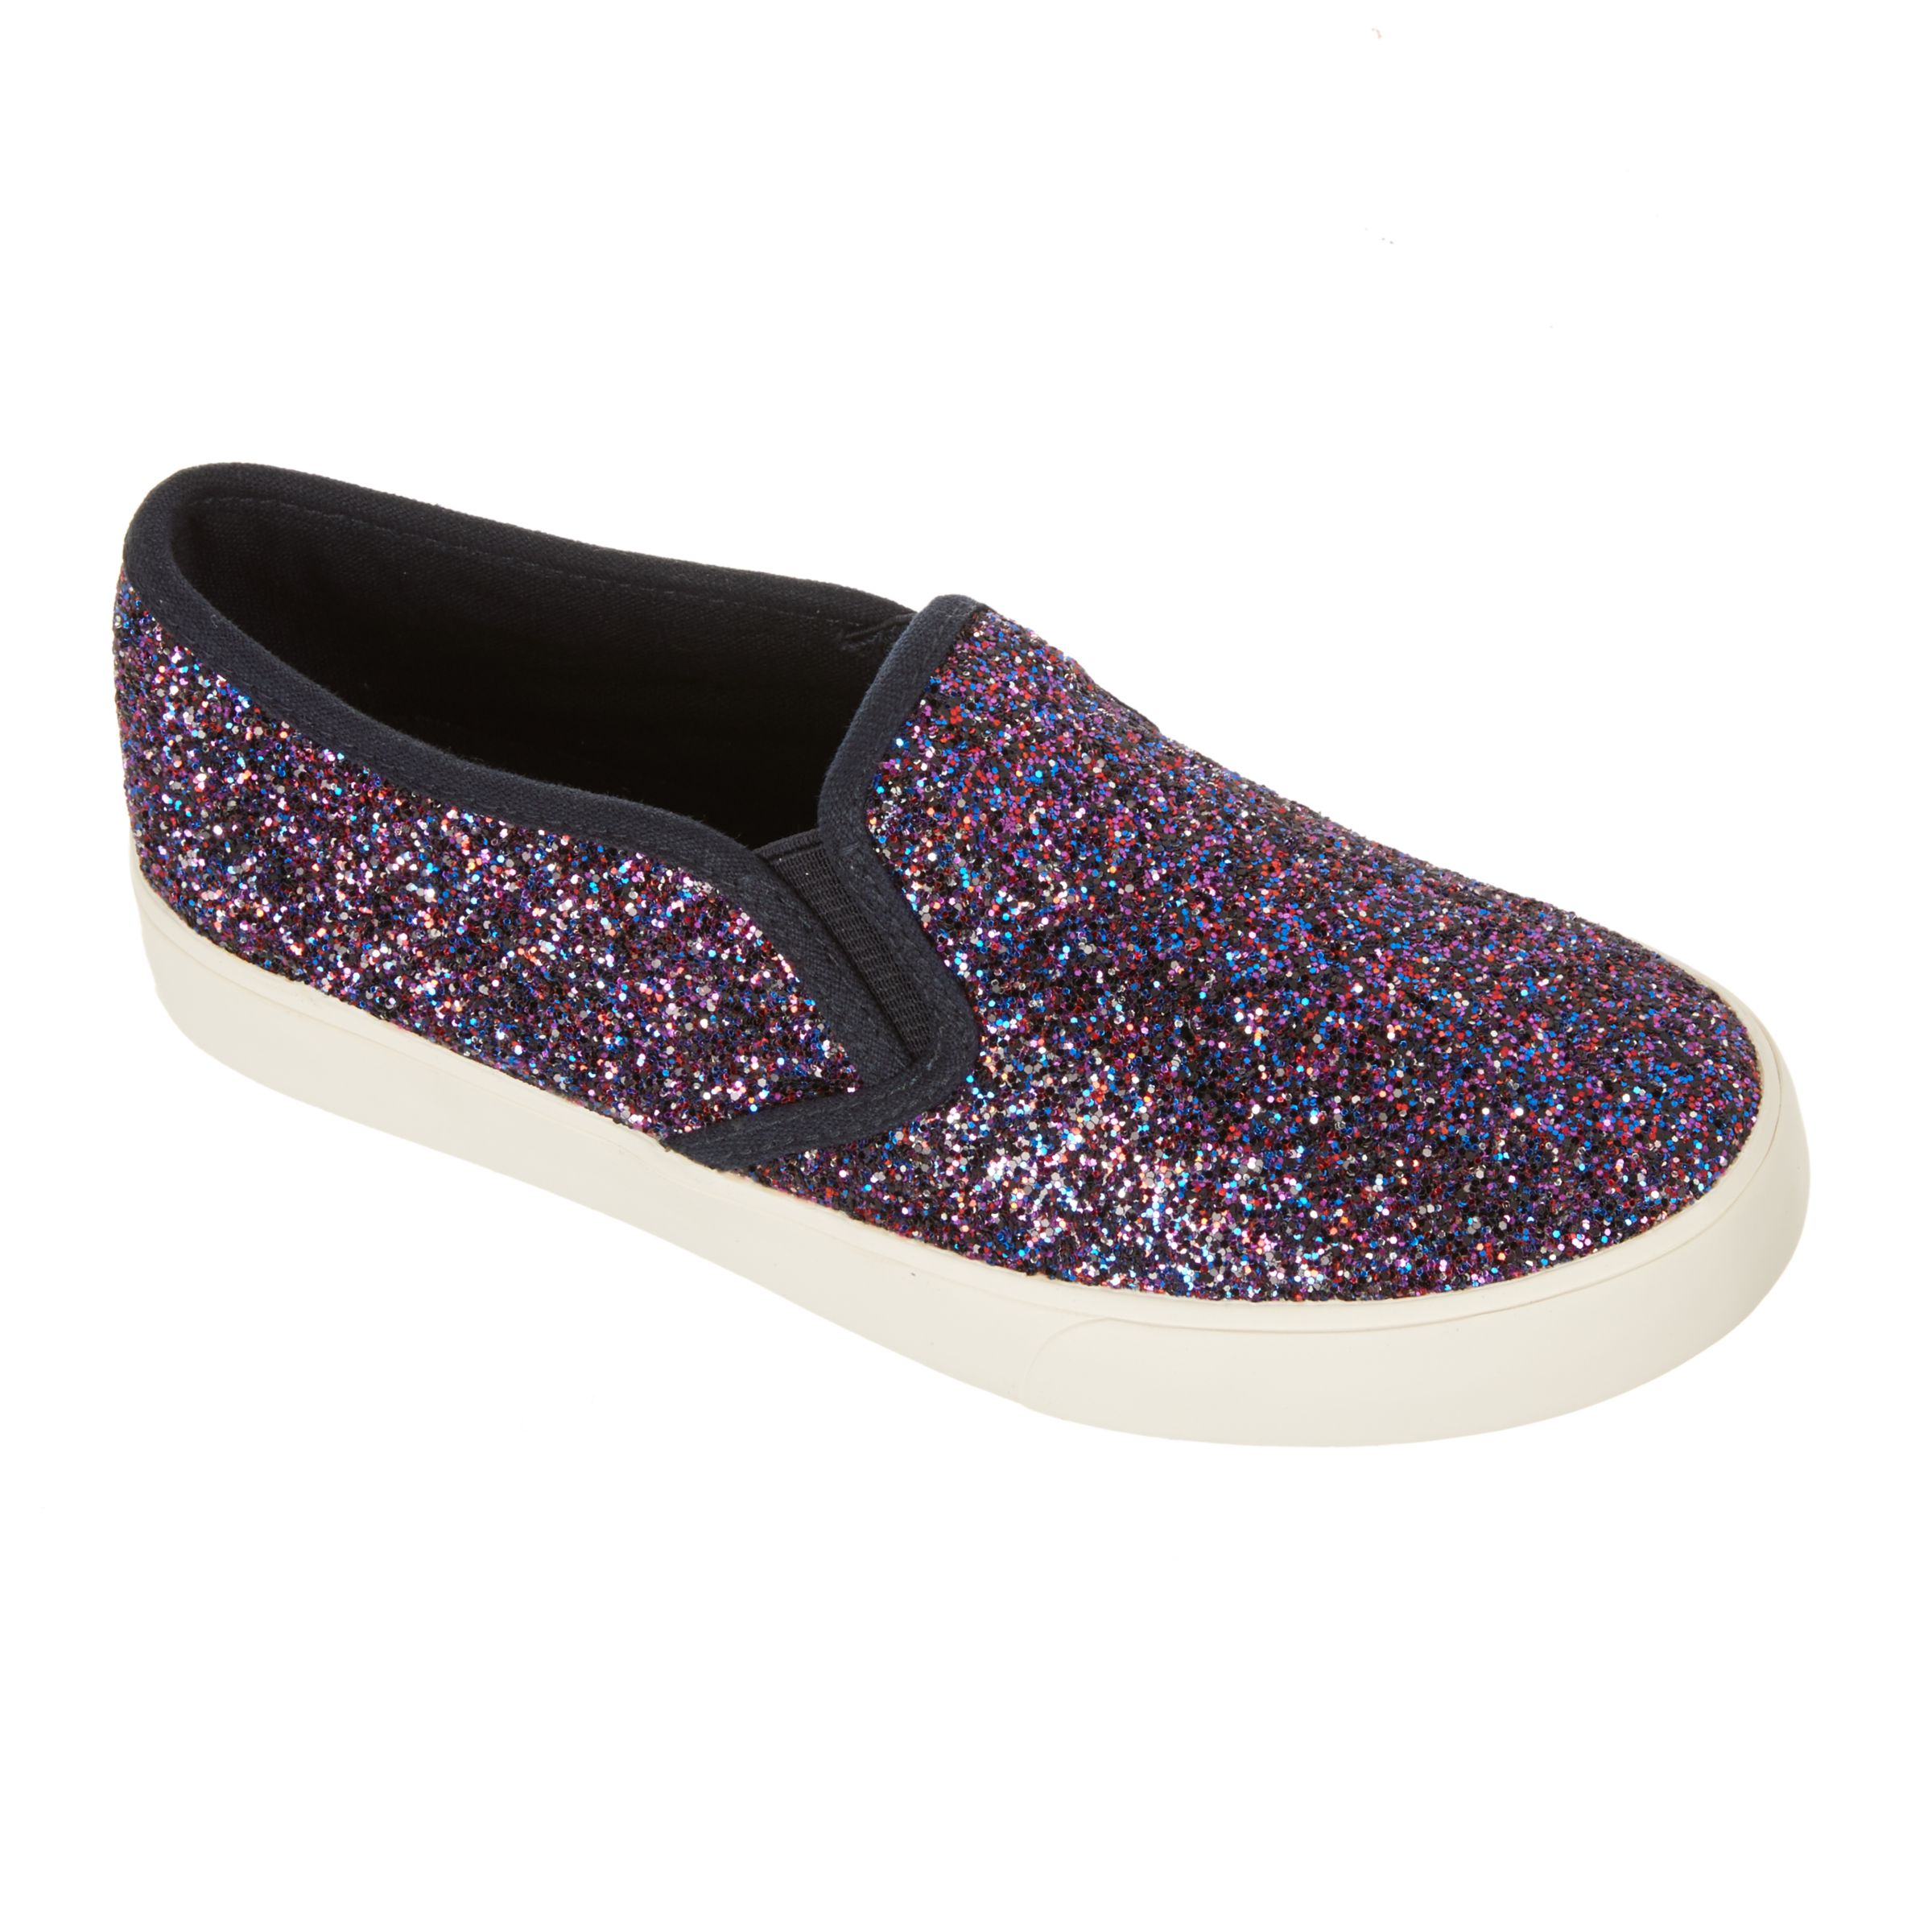 John Lewis & Partners Children's Pheobe Glitter Slip On Shoes, Purple, 3